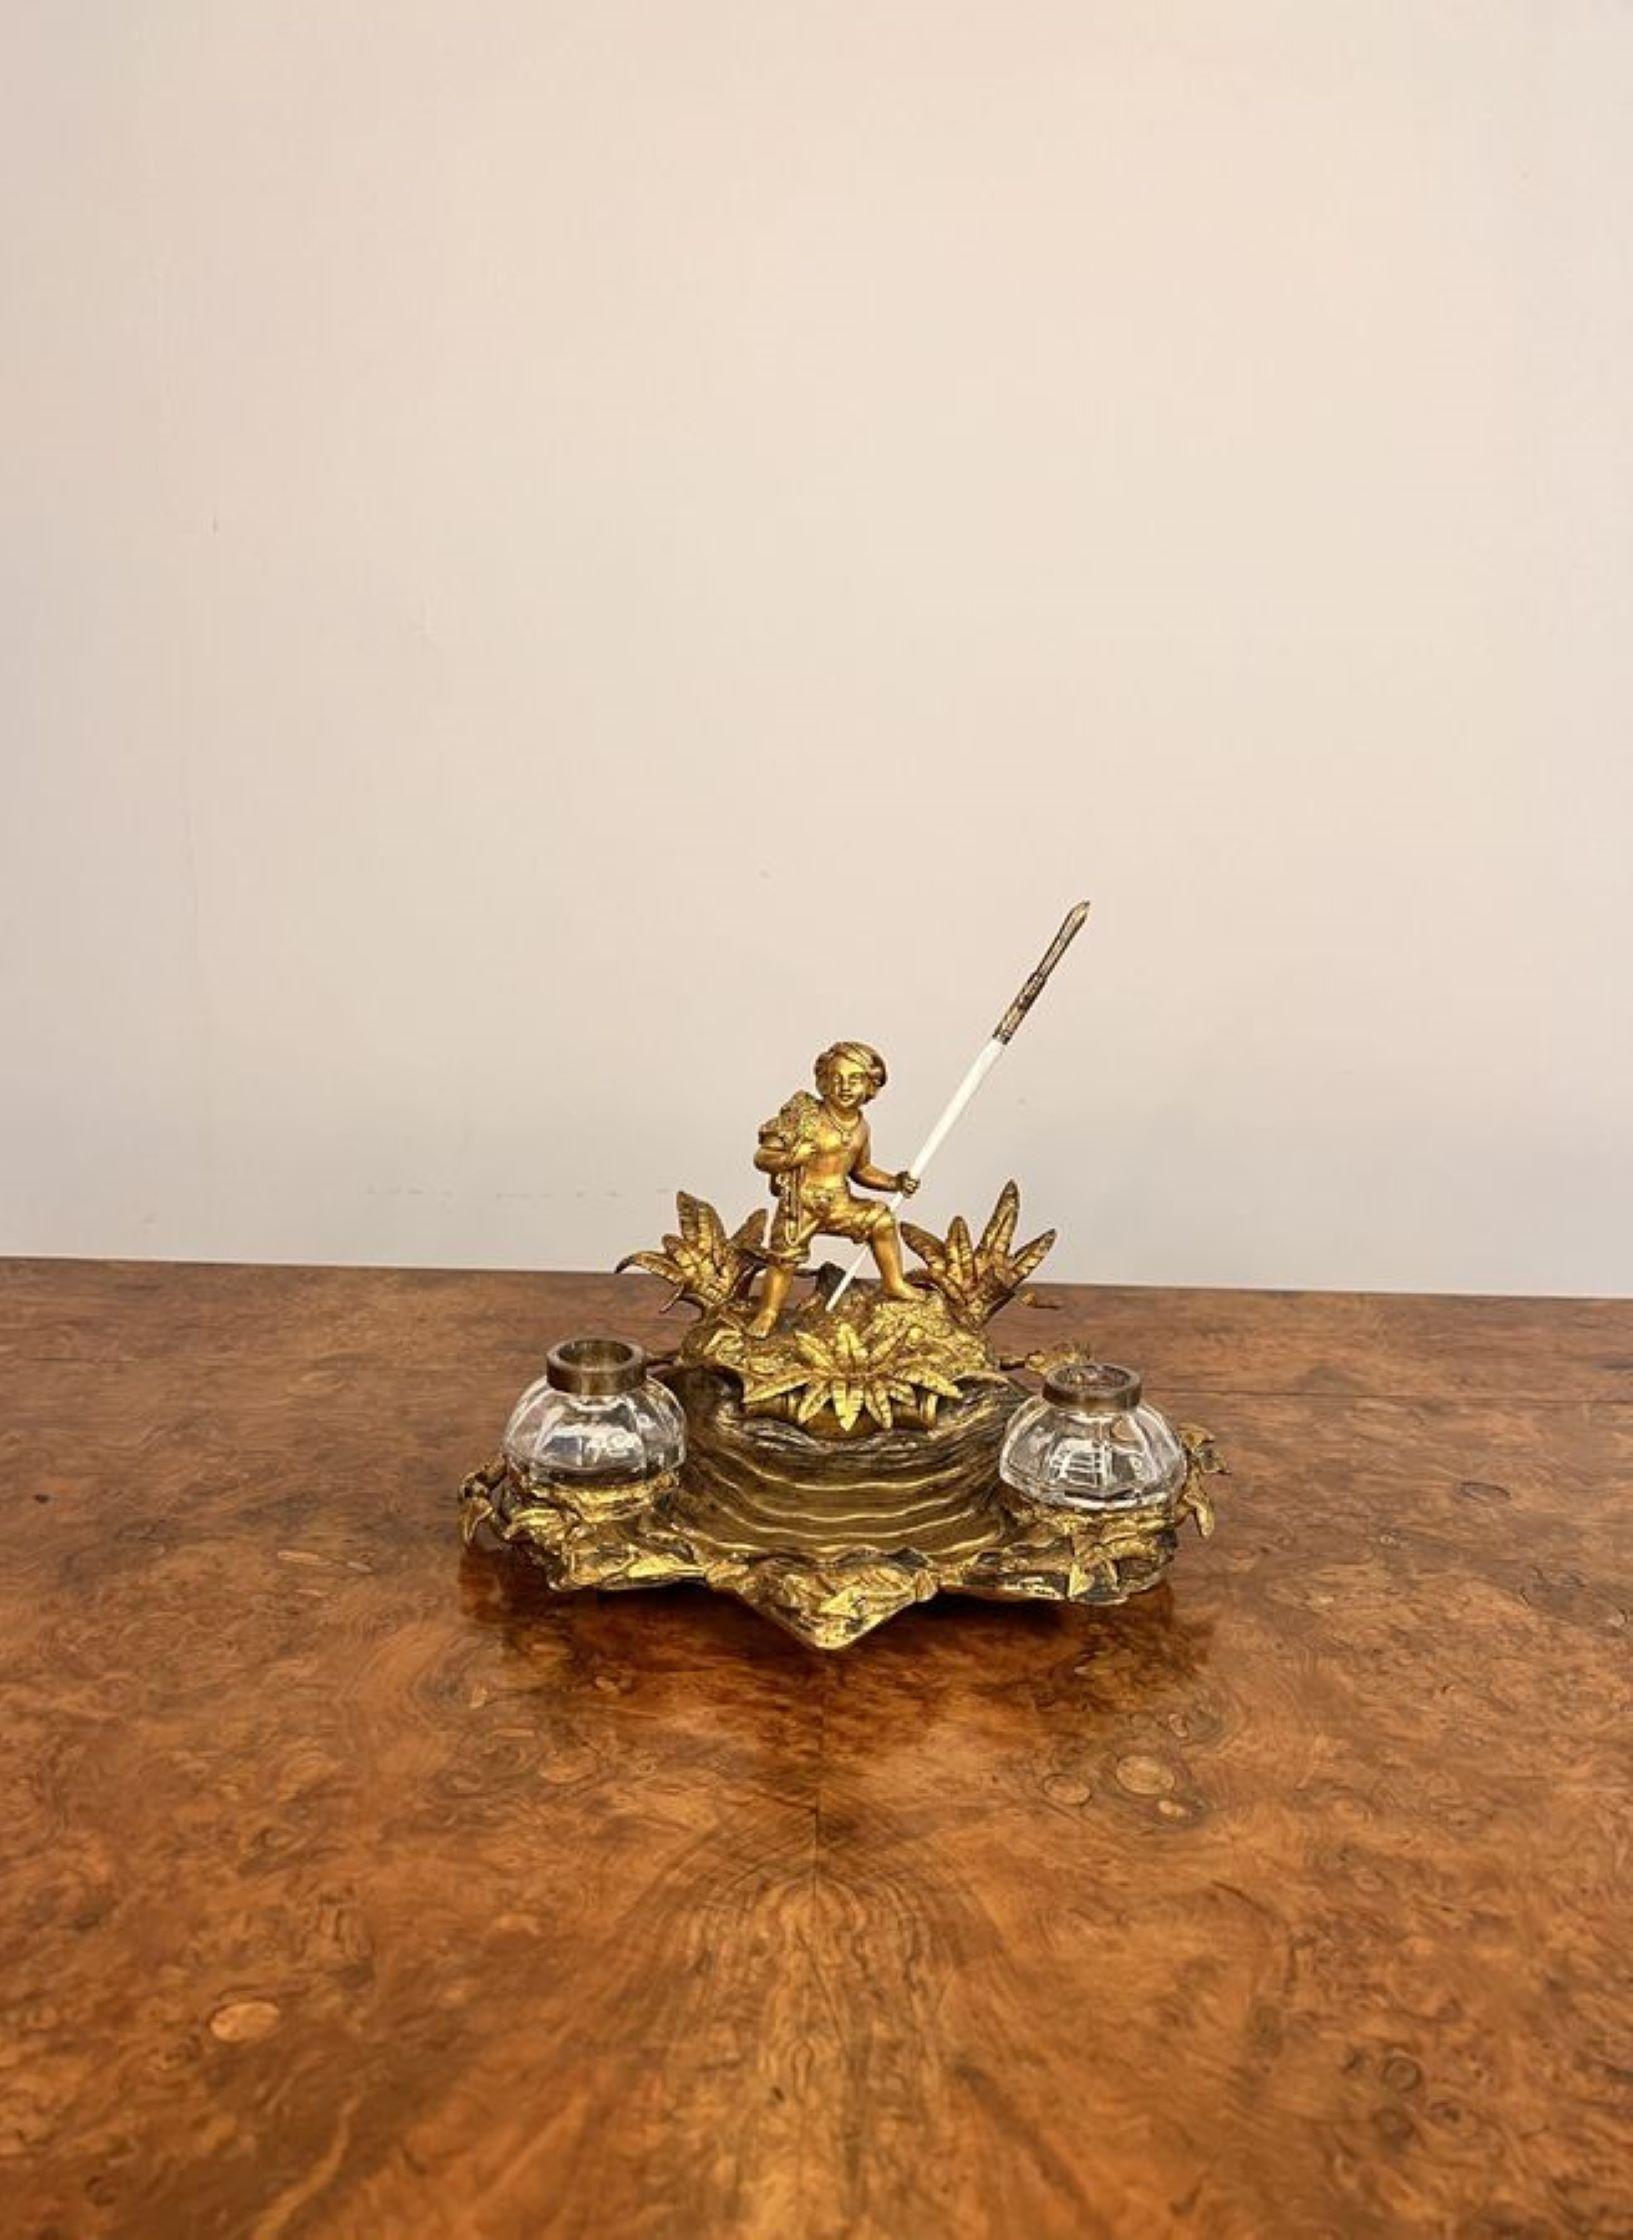 Magnifique ensemble de bureau en bronze doré de l'époque victorienne, avec un personnage sur une île déserte entourée de feuillage, et un plateau en forme avec deux encriers amovibles.

D. 1860